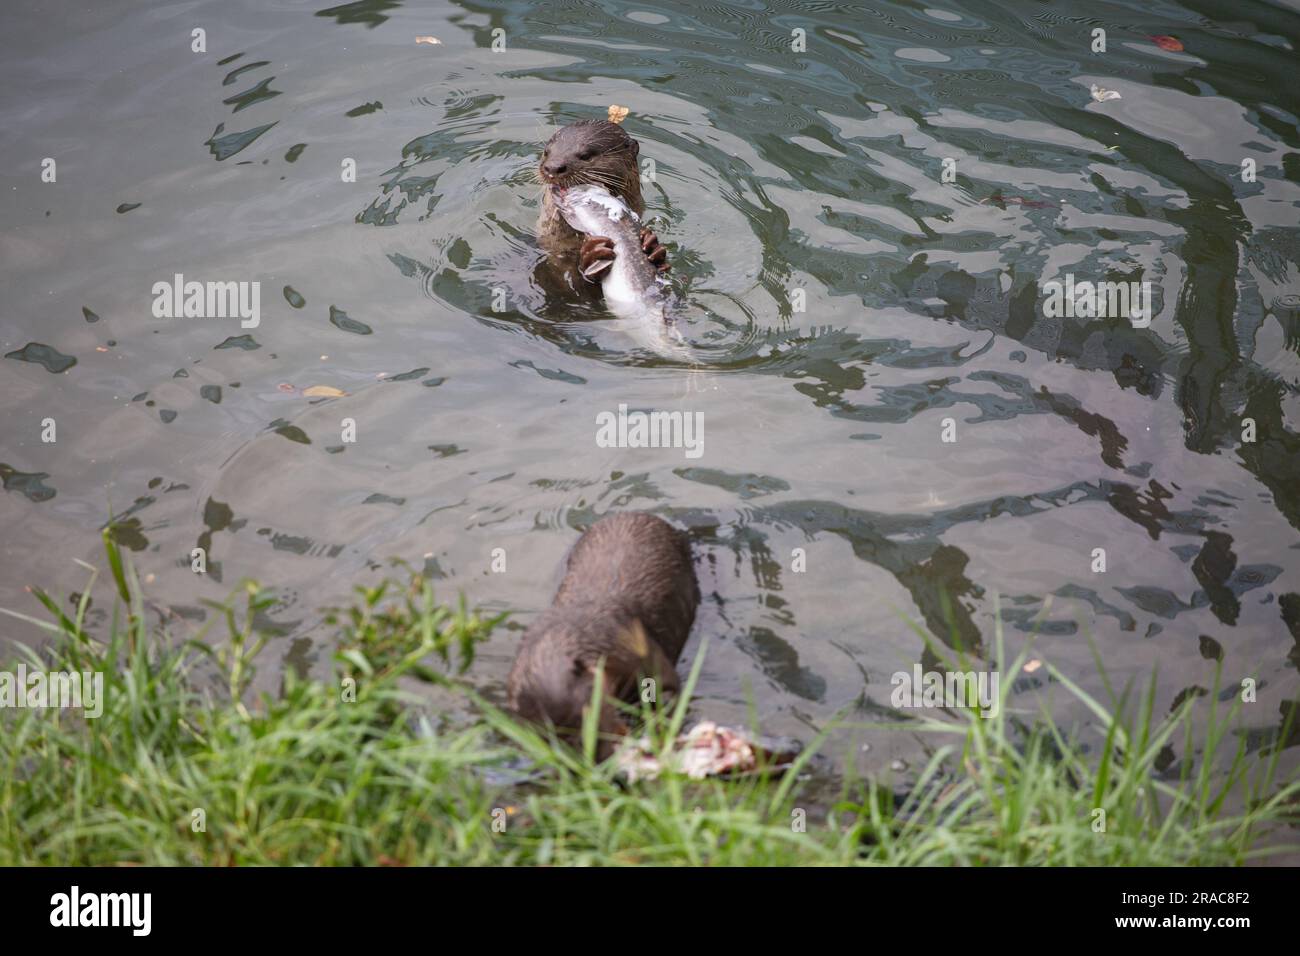 Ein Otter, der der Kamera zugewandt ist, beißt den Fisch ab, während der andere Otter in der Nähe des Fels isst. Stockfoto